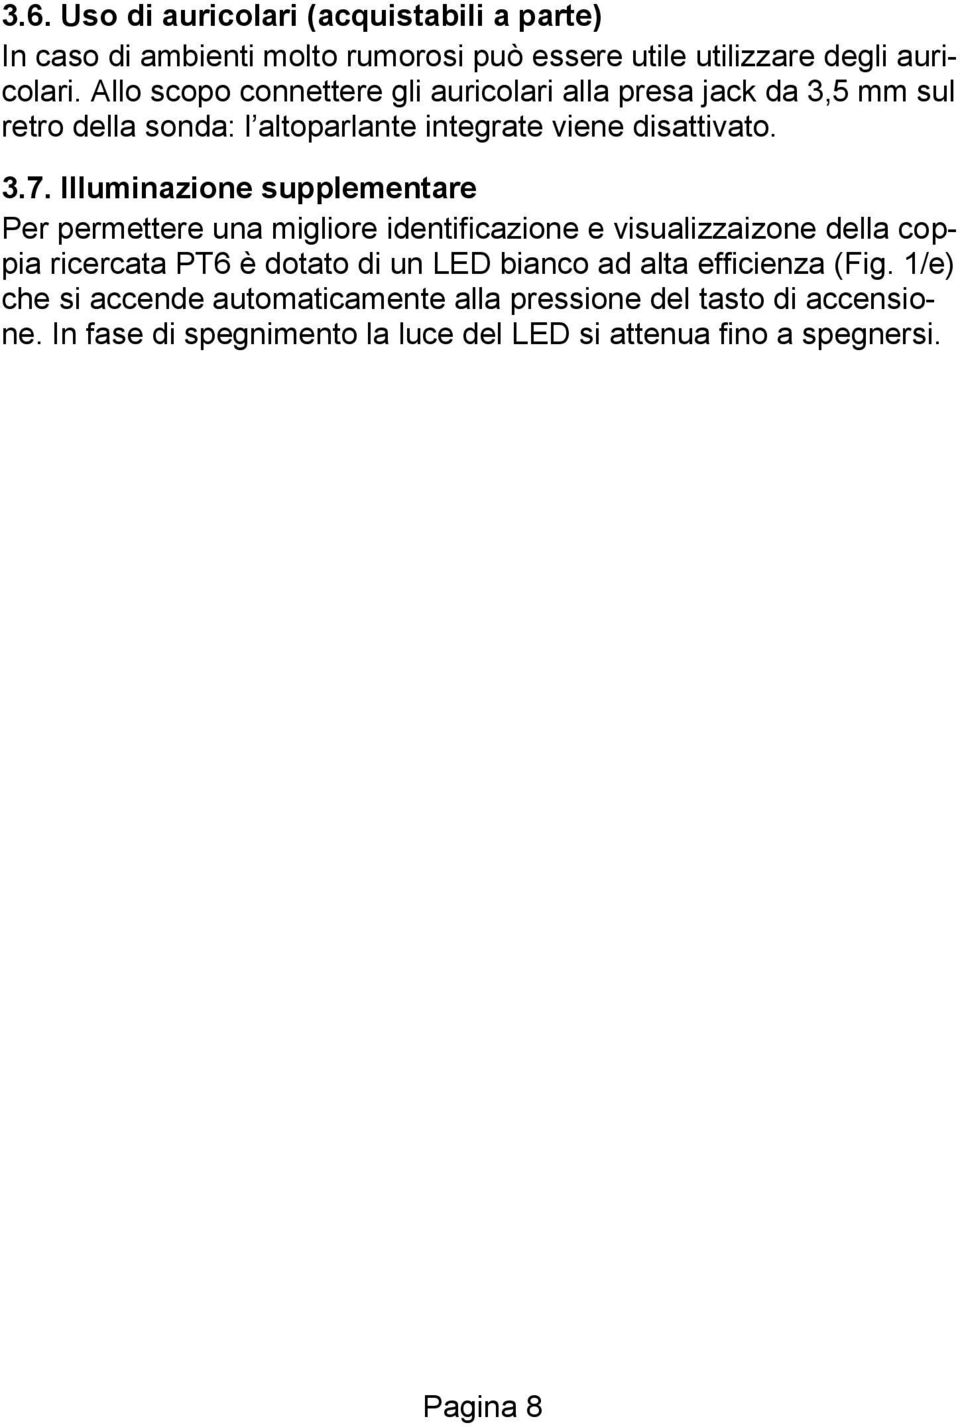 Illuminazione supplementare Per permettere una migliore identificazione e visualizzaizone della coppia ricercata PT6 è dotato di un LED bianco ad